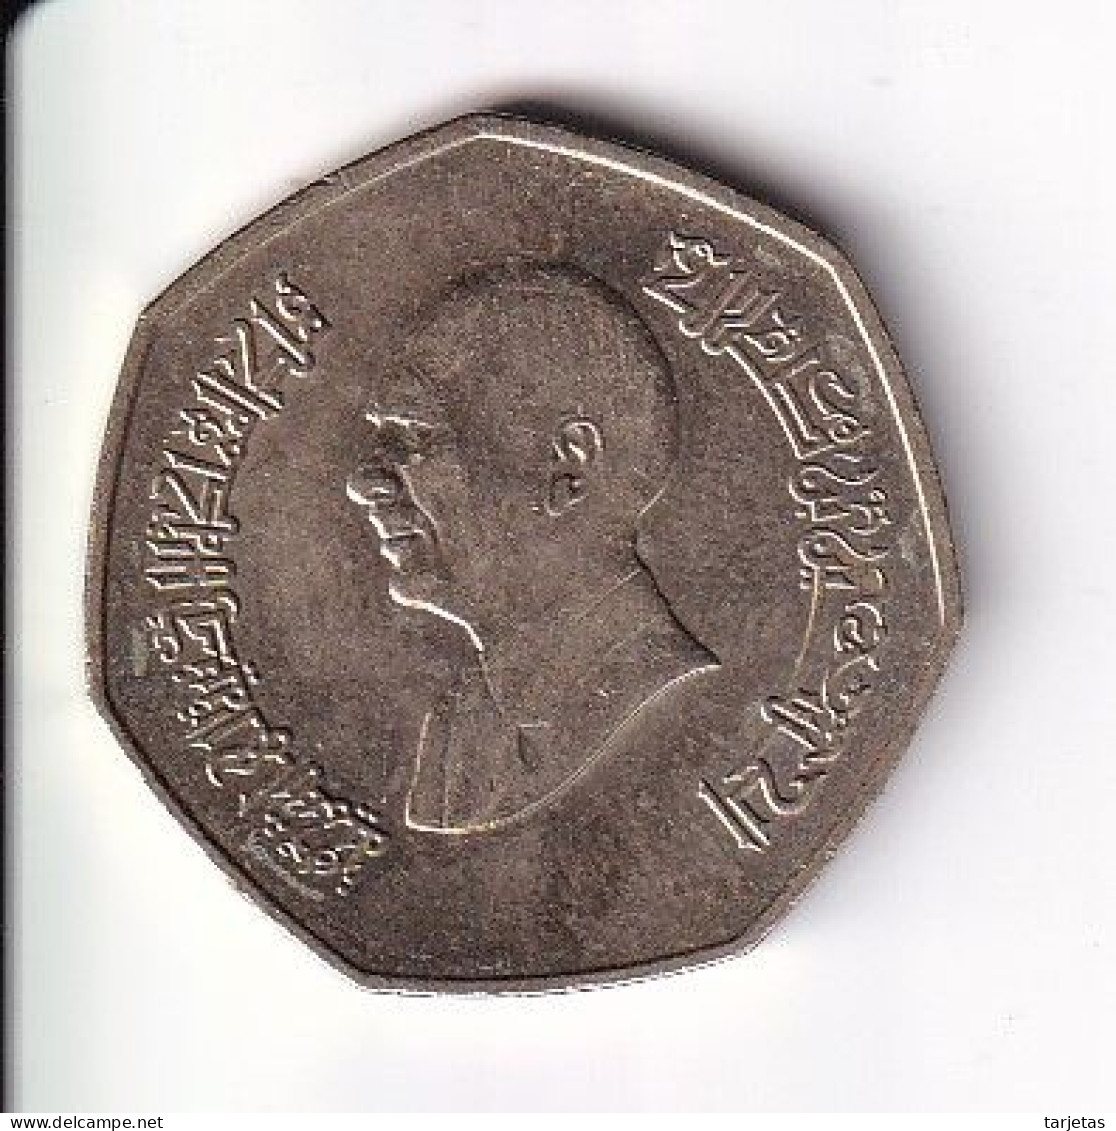 MONEDA DE JORDANIA DE 1/4 DE DINAR DEL AÑO 1997 (COIN) - Jordanien